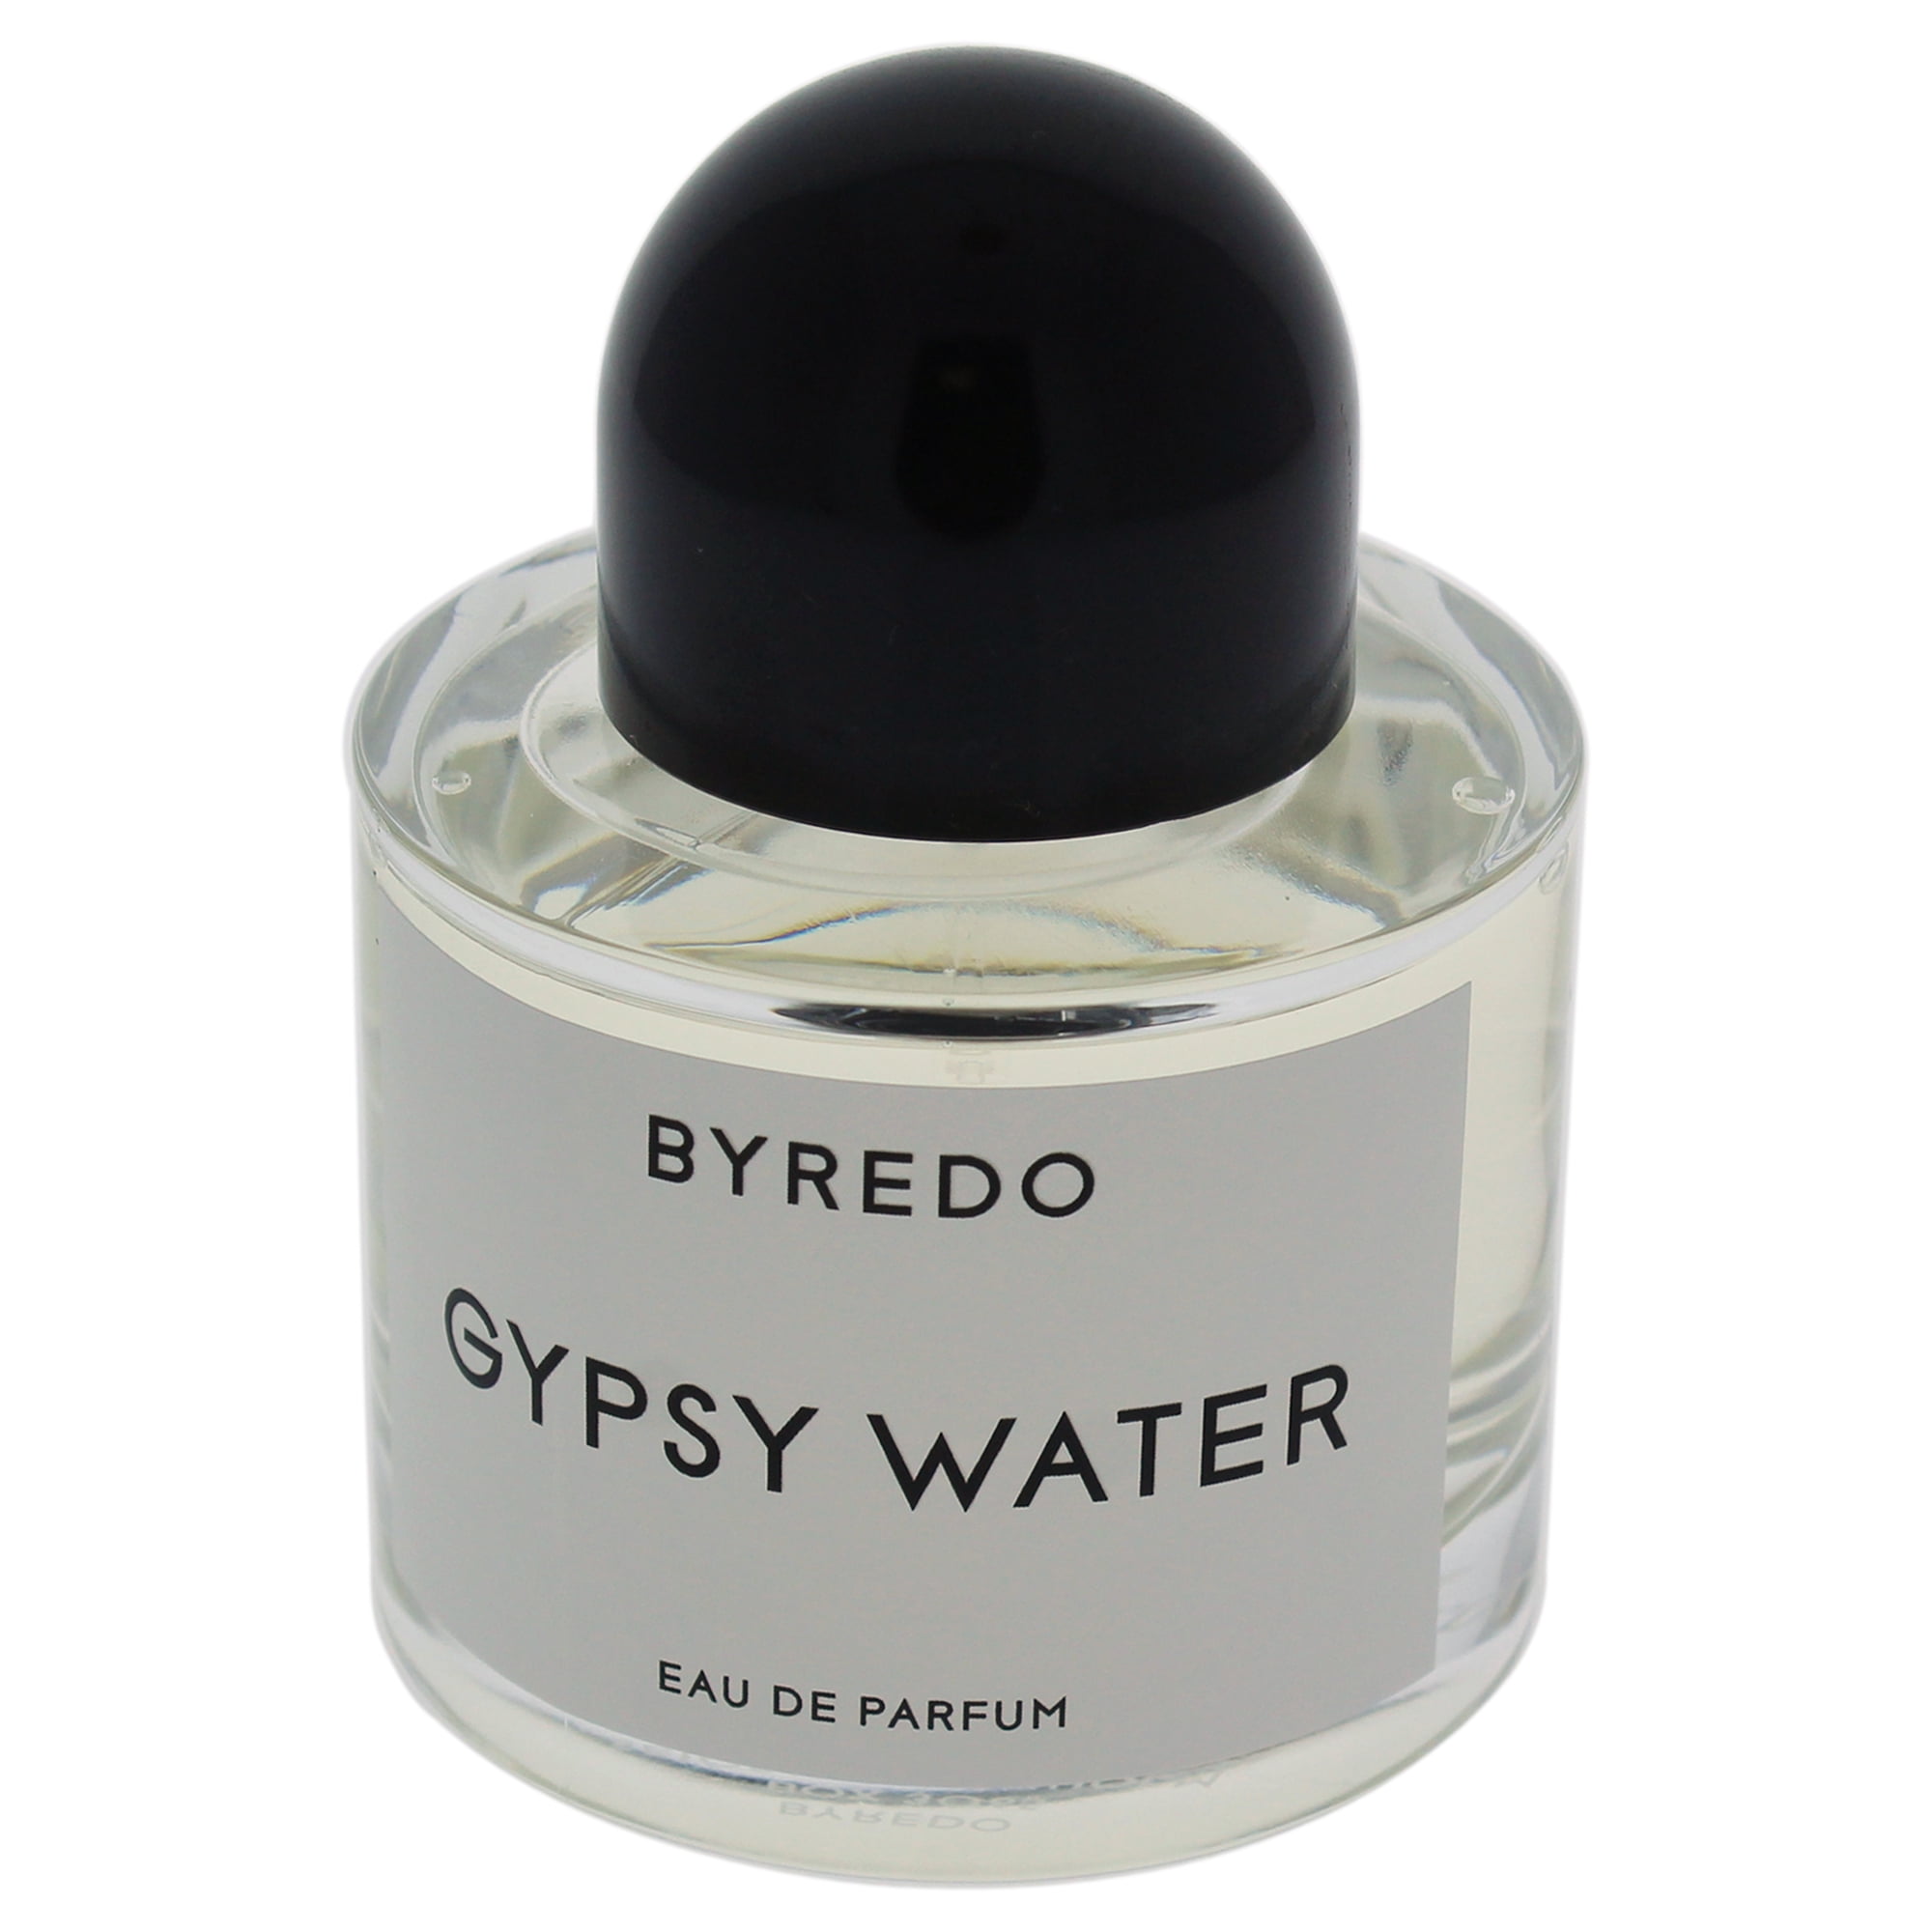 Байредо Джипси Ватер. Byredo Gypsy Water Eau de Parfum. Байредо цыганская вода. Byredo Gypsy Water в спэл СМЭЛ.